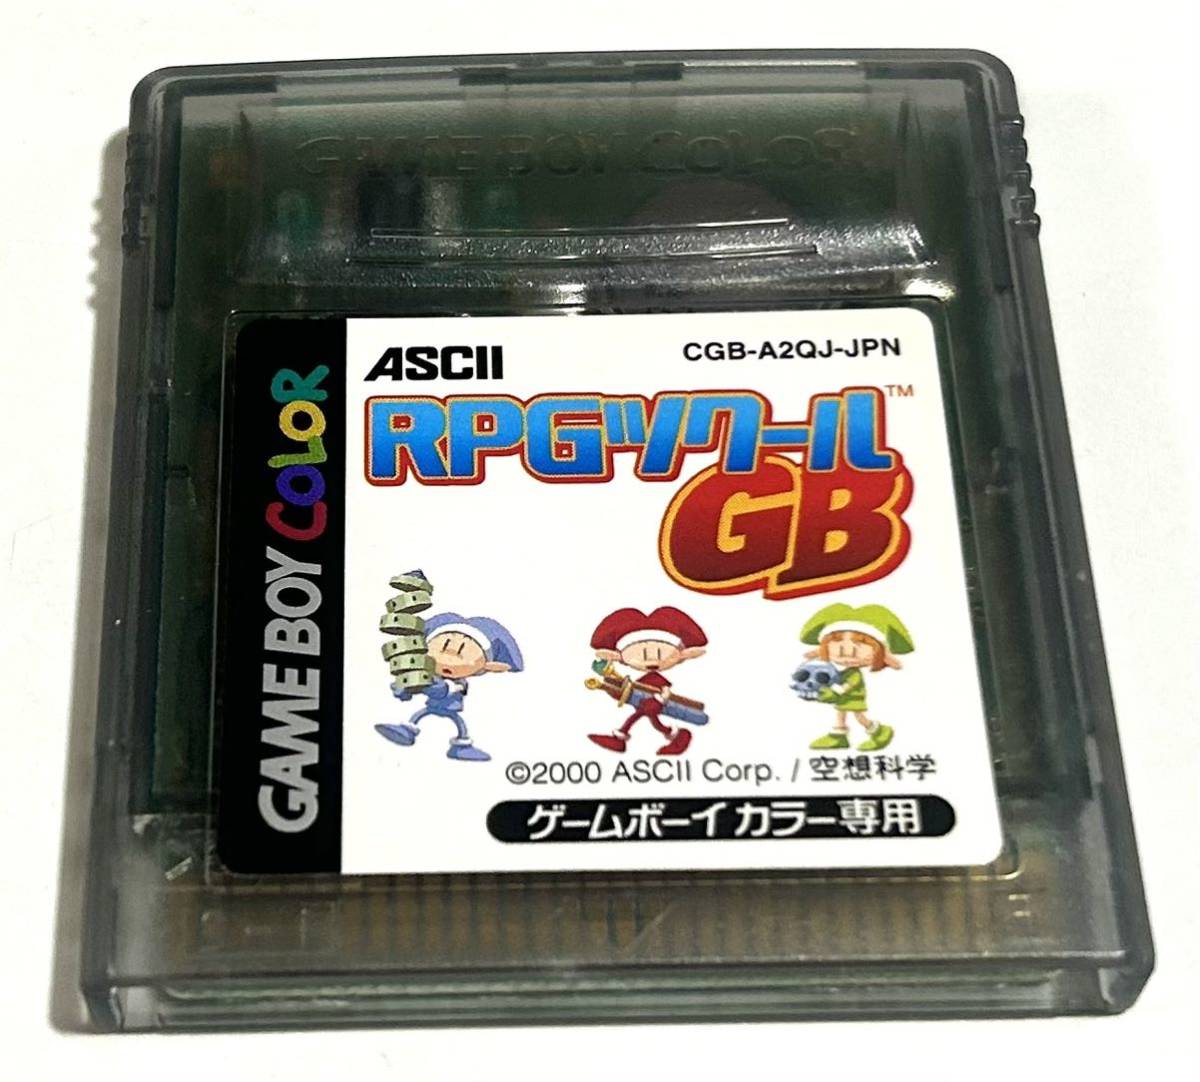 ゲームボーイカラー GBC ソフト カセット カートリッジ RPGツクール GB ASCII Corp. 空想科学_画像1